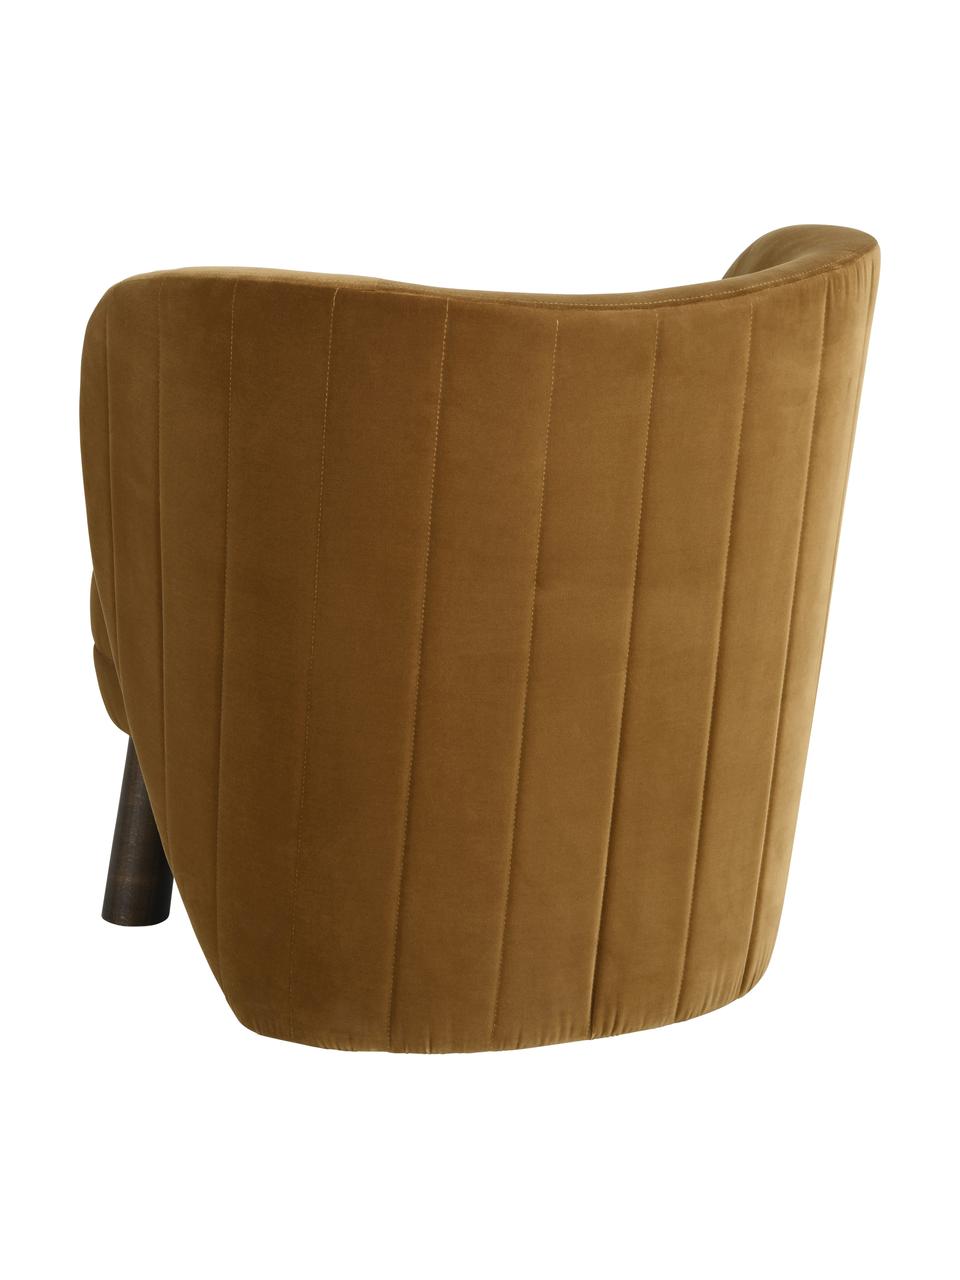 Fluwelen fauteuil Tress in bruin, Bekleding: 89 % katoen, 11 % polyest, Frame: multiplex, Poten: grenenhout, FSC-gecertifi, Fluweel bruin, B 72 x D 75 cm